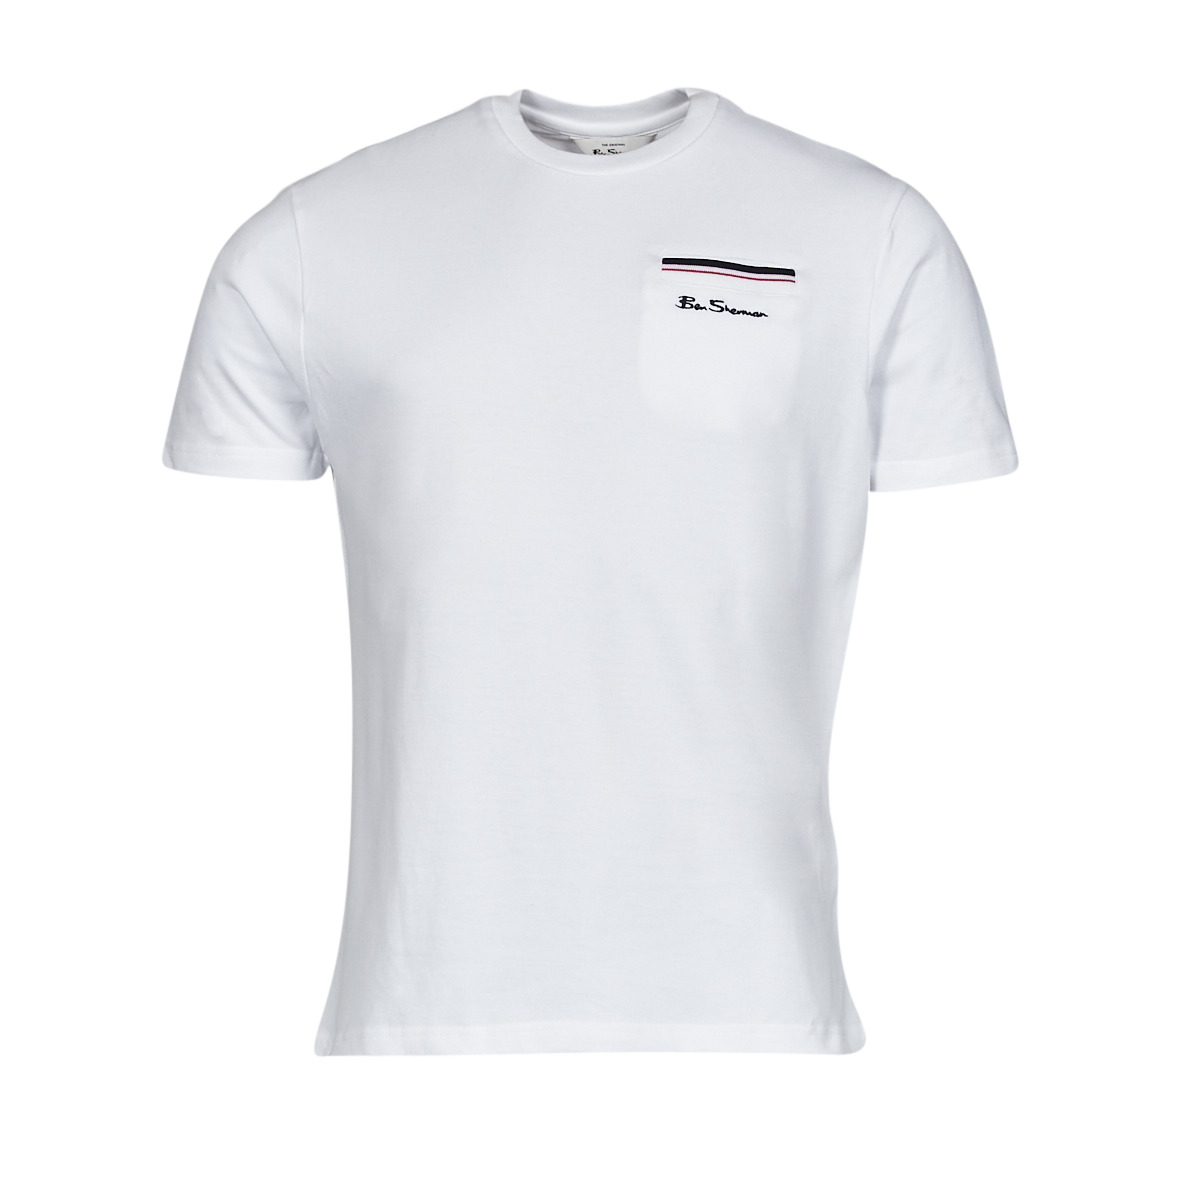 Kleidung Herren T-Shirts Ben Sherman PIQUE POCKETT Weiß